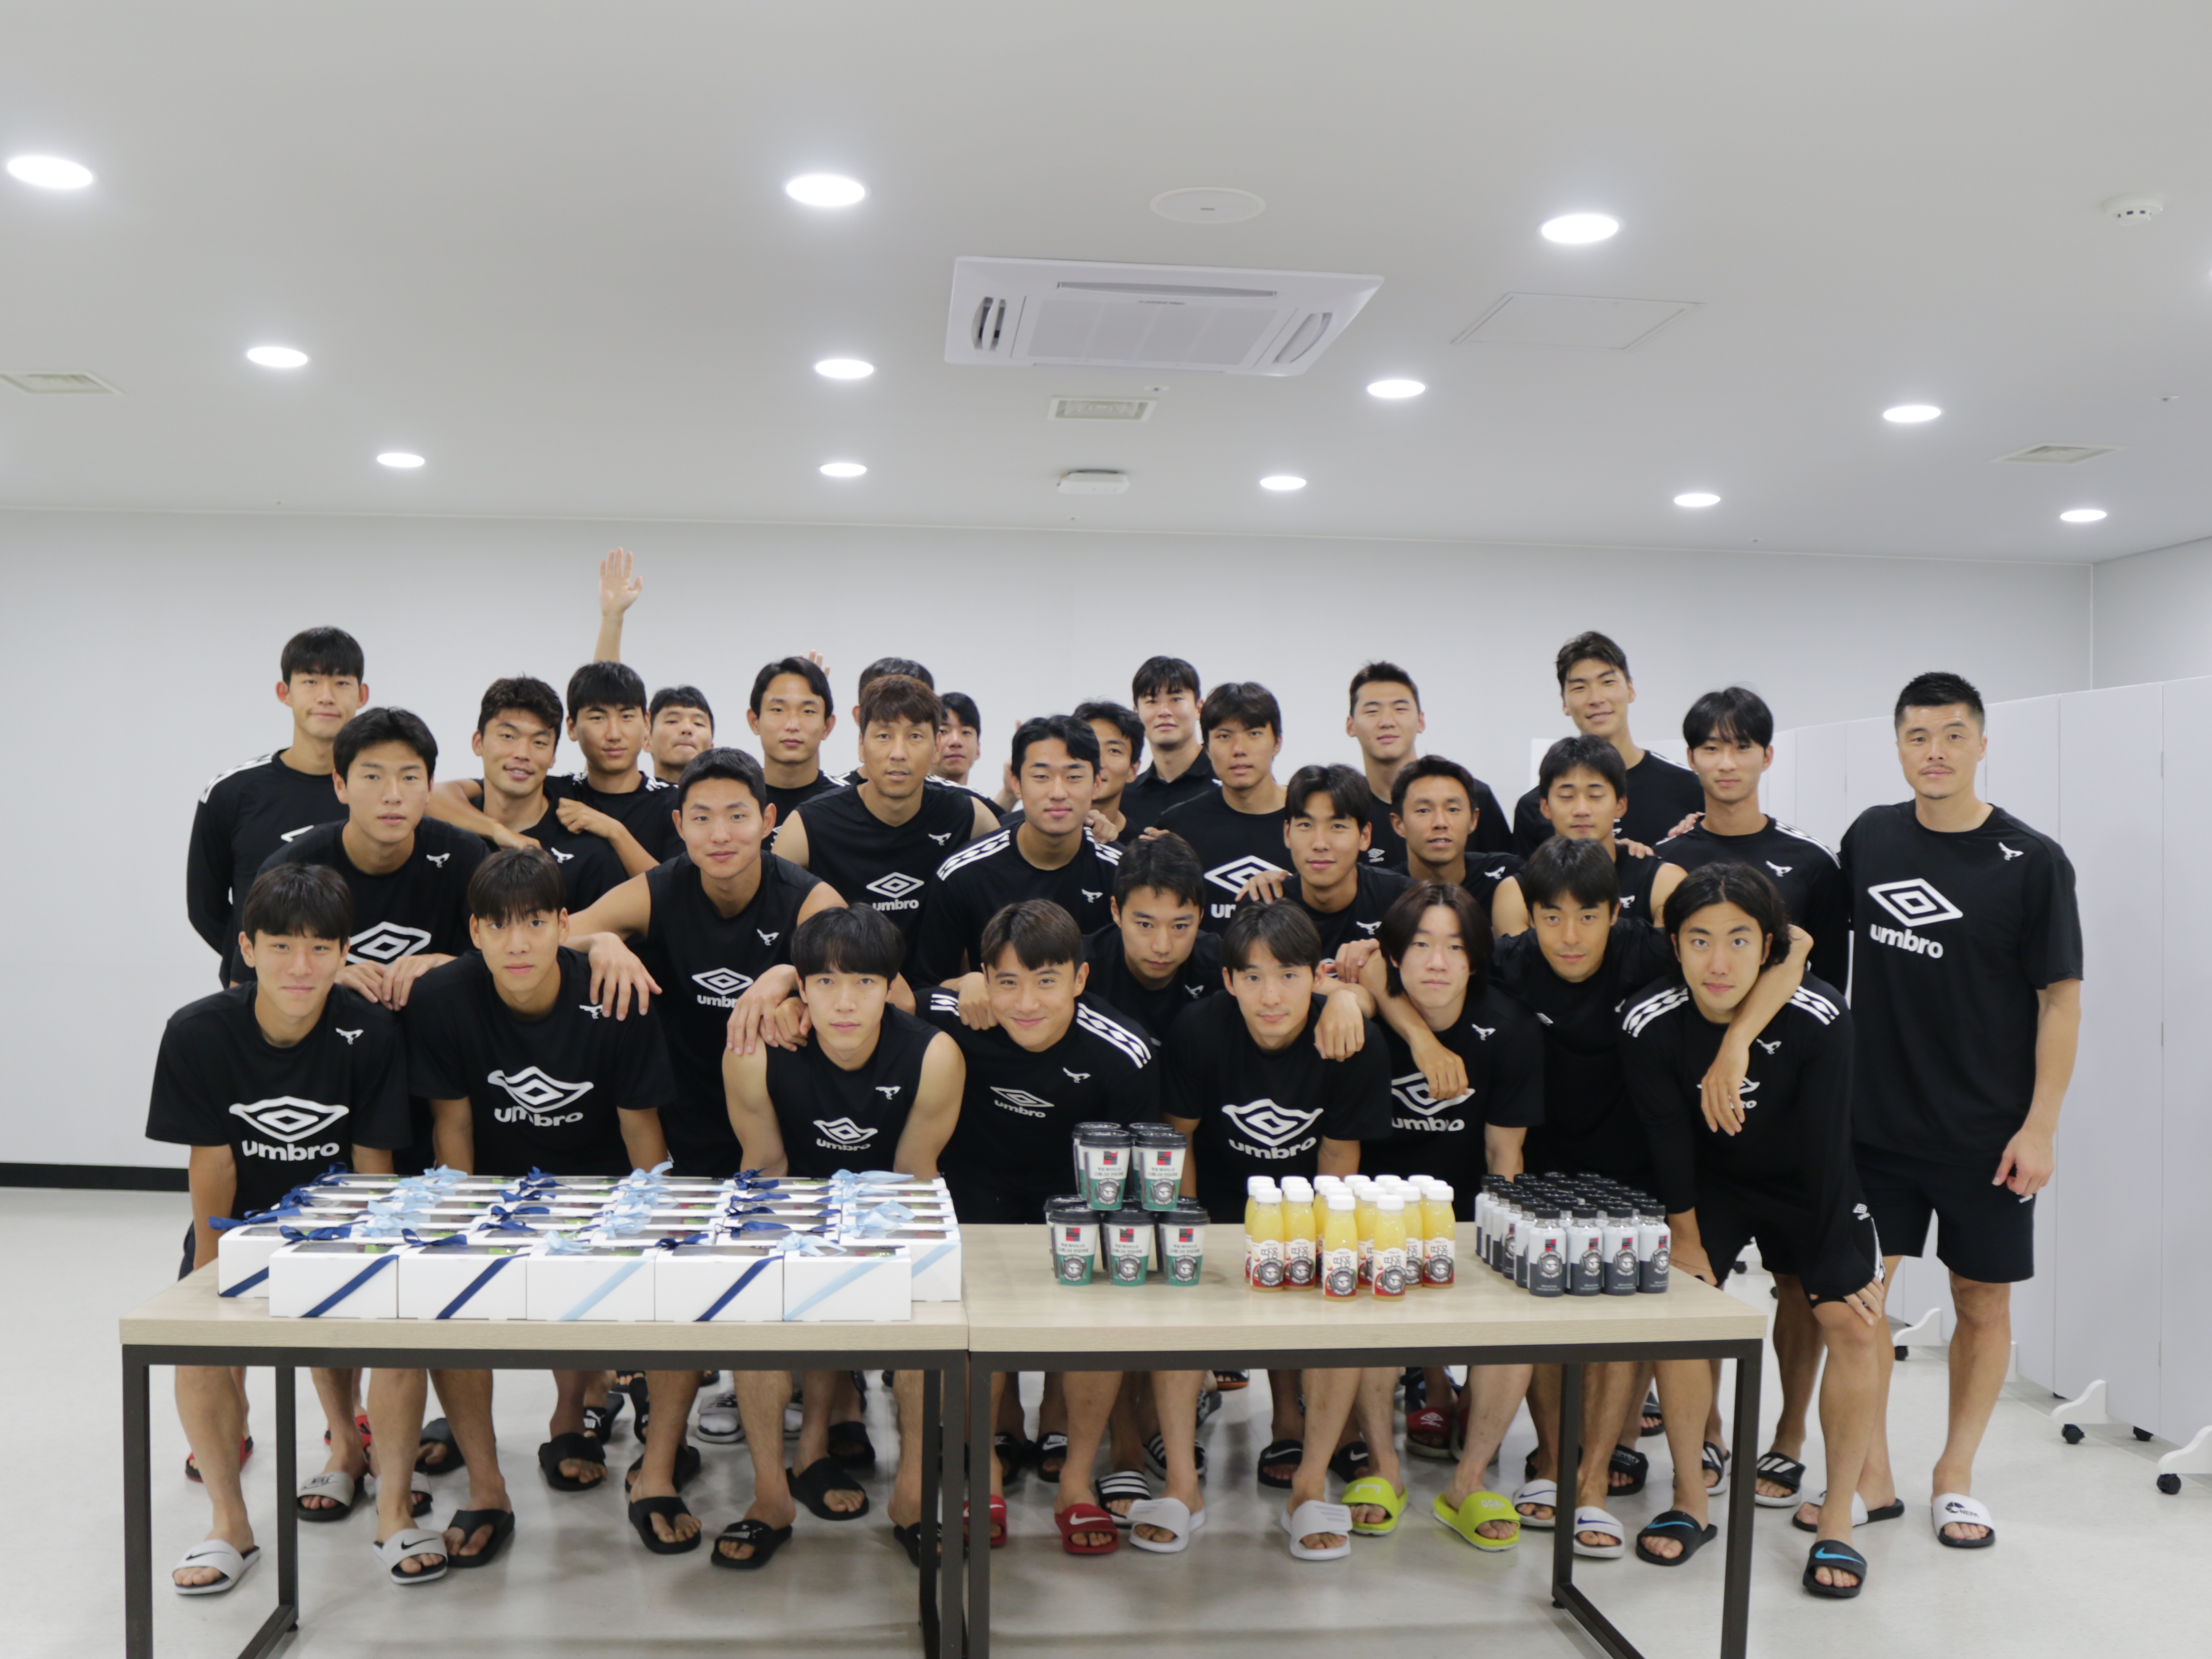 [Field Mag] 성남FC 선수단, 팬들의 뜻깊은 선물로 에너지 충전!